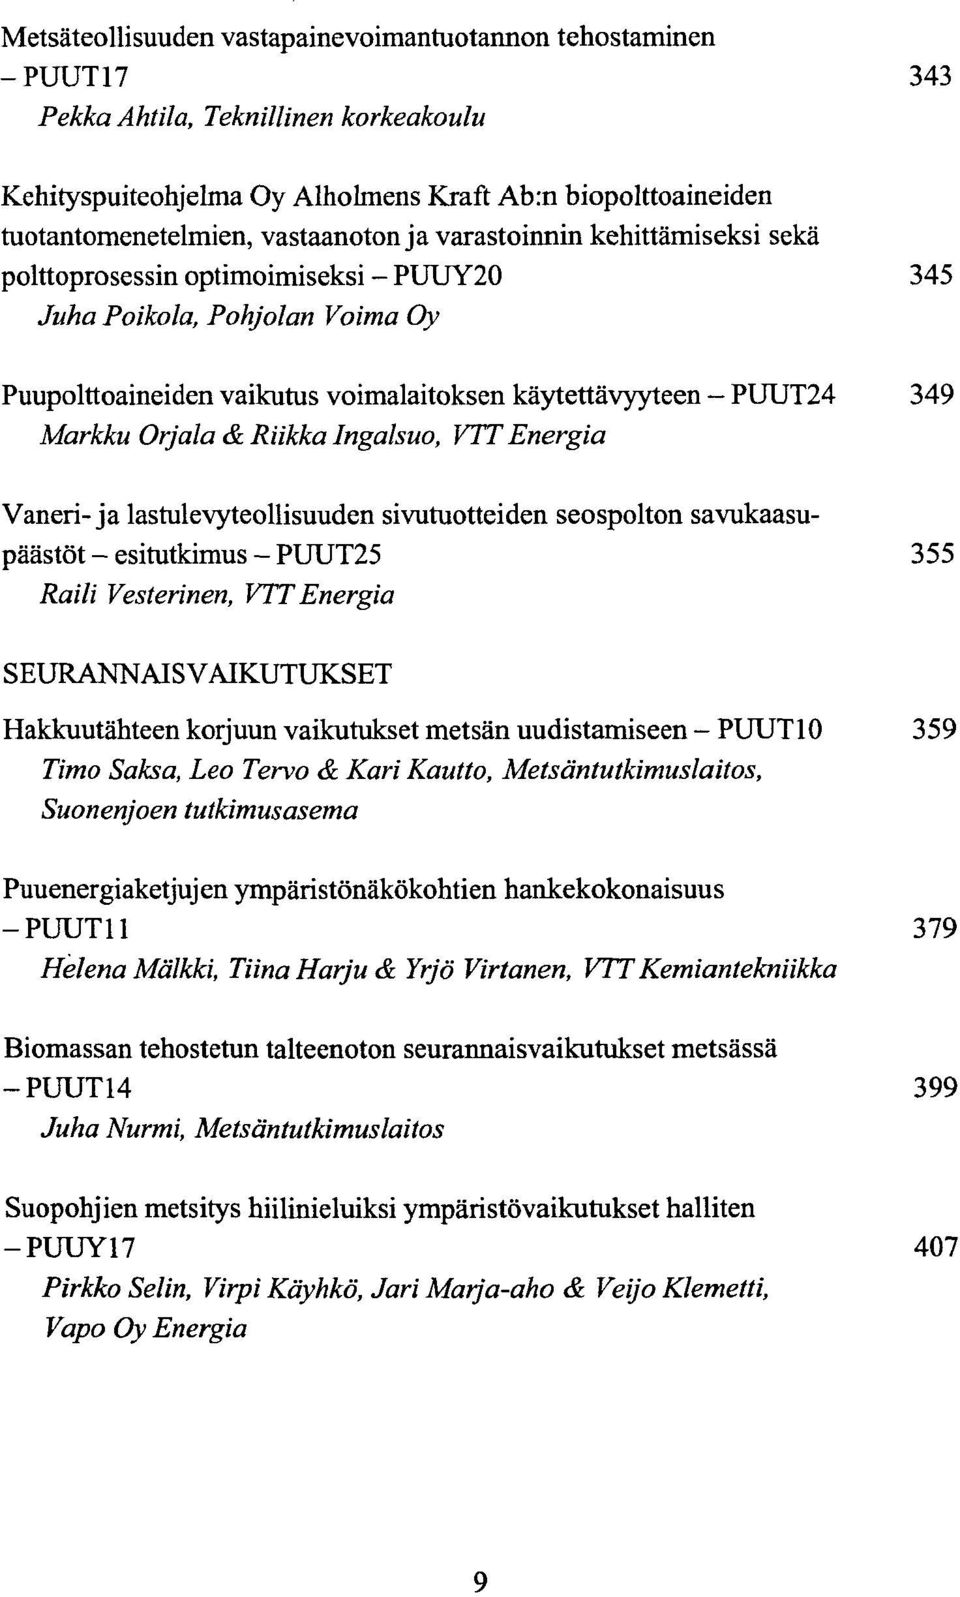 Orjala & Riikka Ingalsuo, VTT Energia Vaneri- ja lastulevyteollisuuden sivuruotteiden seospolton savukaasupaastot - esirutkimus - PUUT25 355 Raili Vesterinen, VTT Energia SEURANNAISVAIKUTUKSET